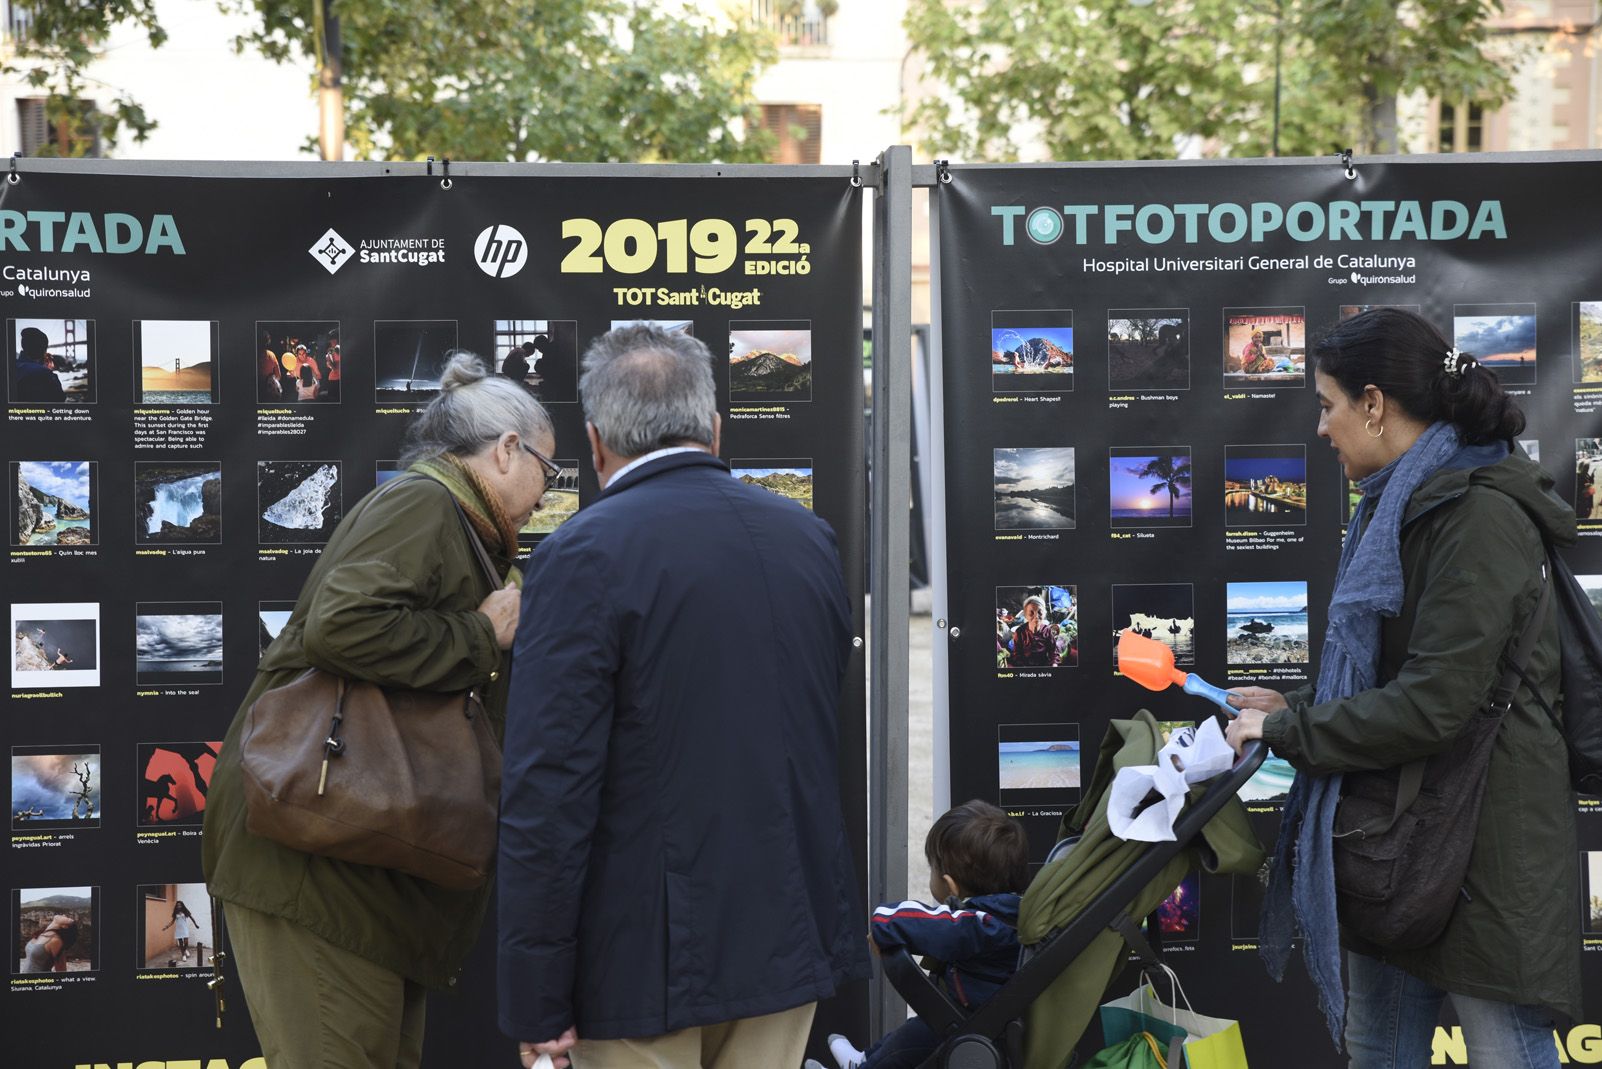 Exposició TotFotoportada HUGC 2019. Foto: Bernat Millet.